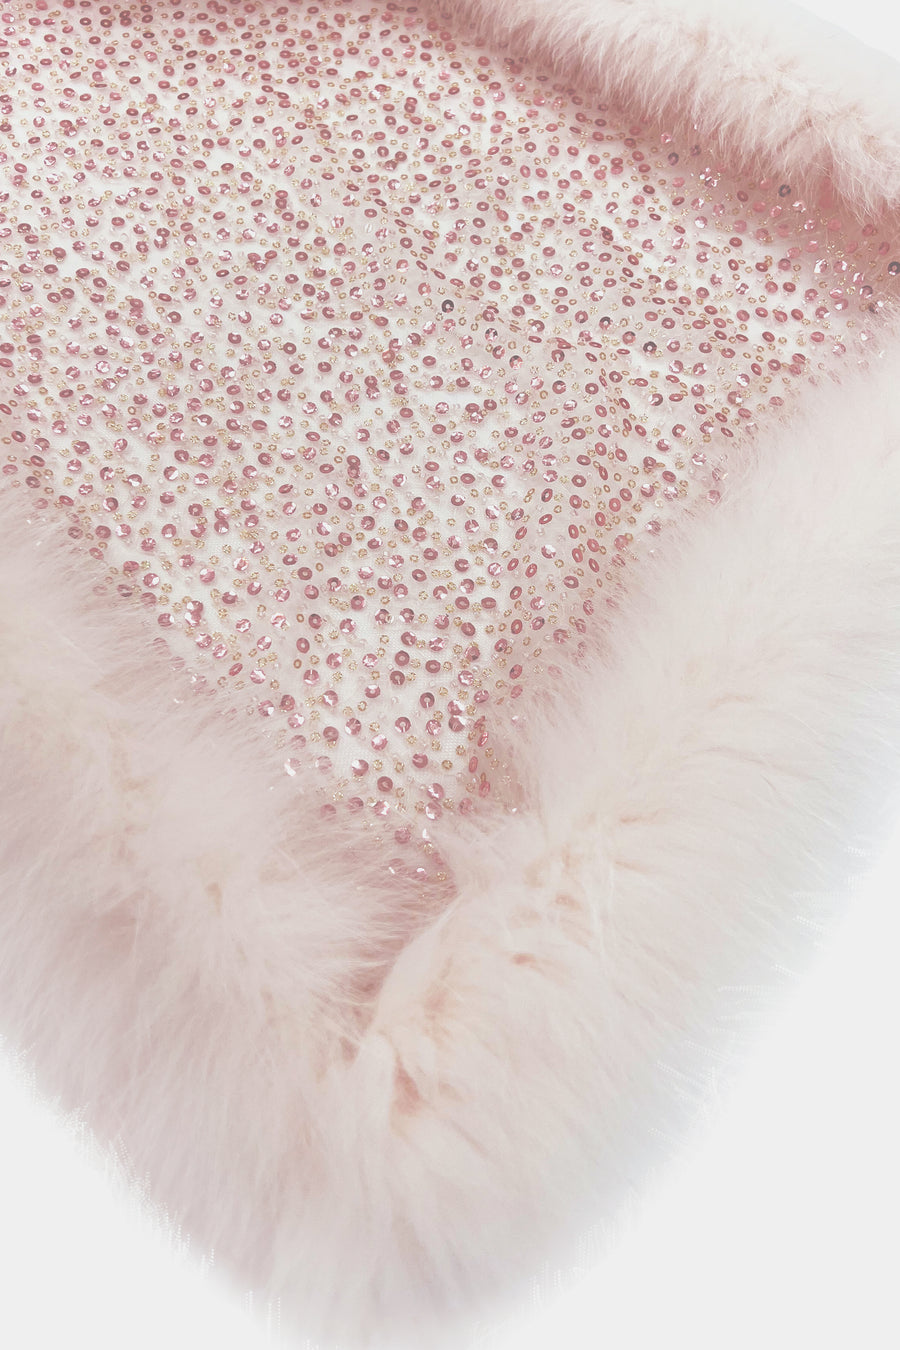 Fox Fur Trim Lace Stole - ROSE GOLD